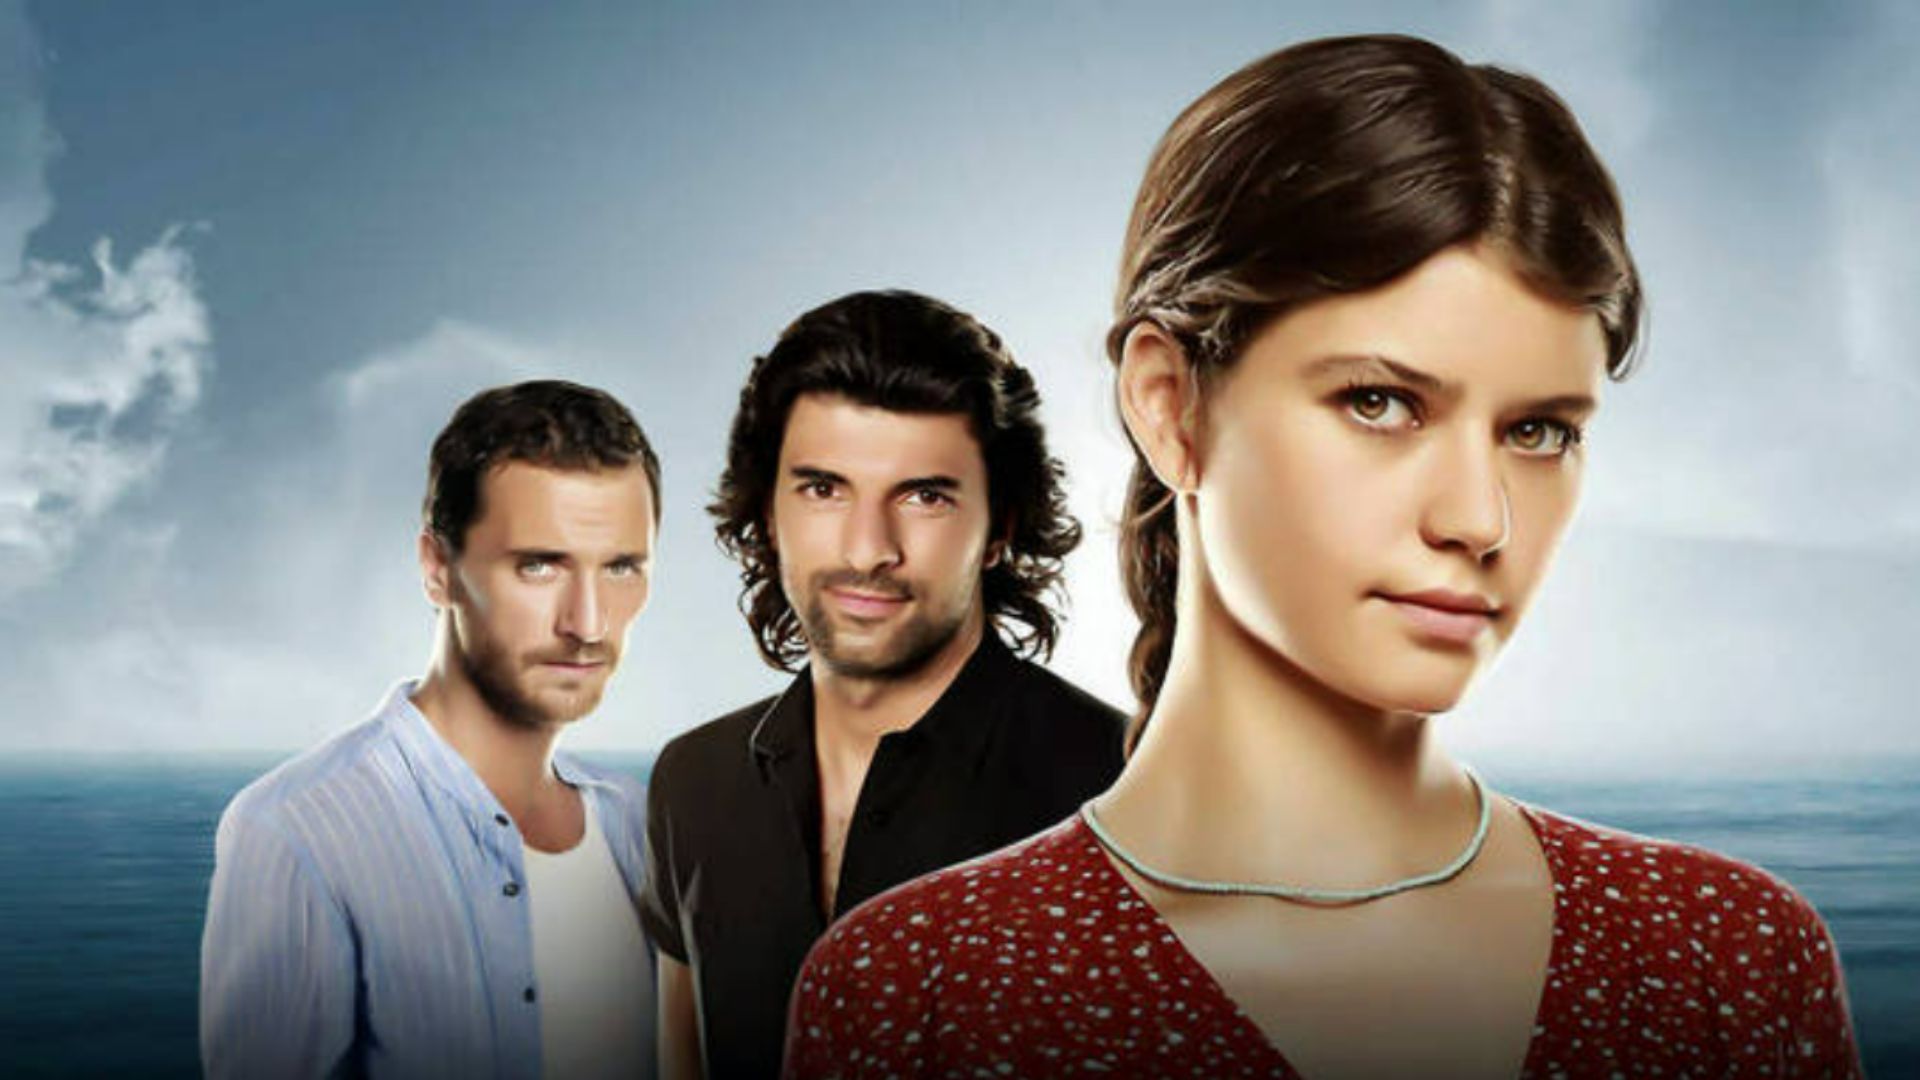 TNT Novelas cresce com dramas turcas